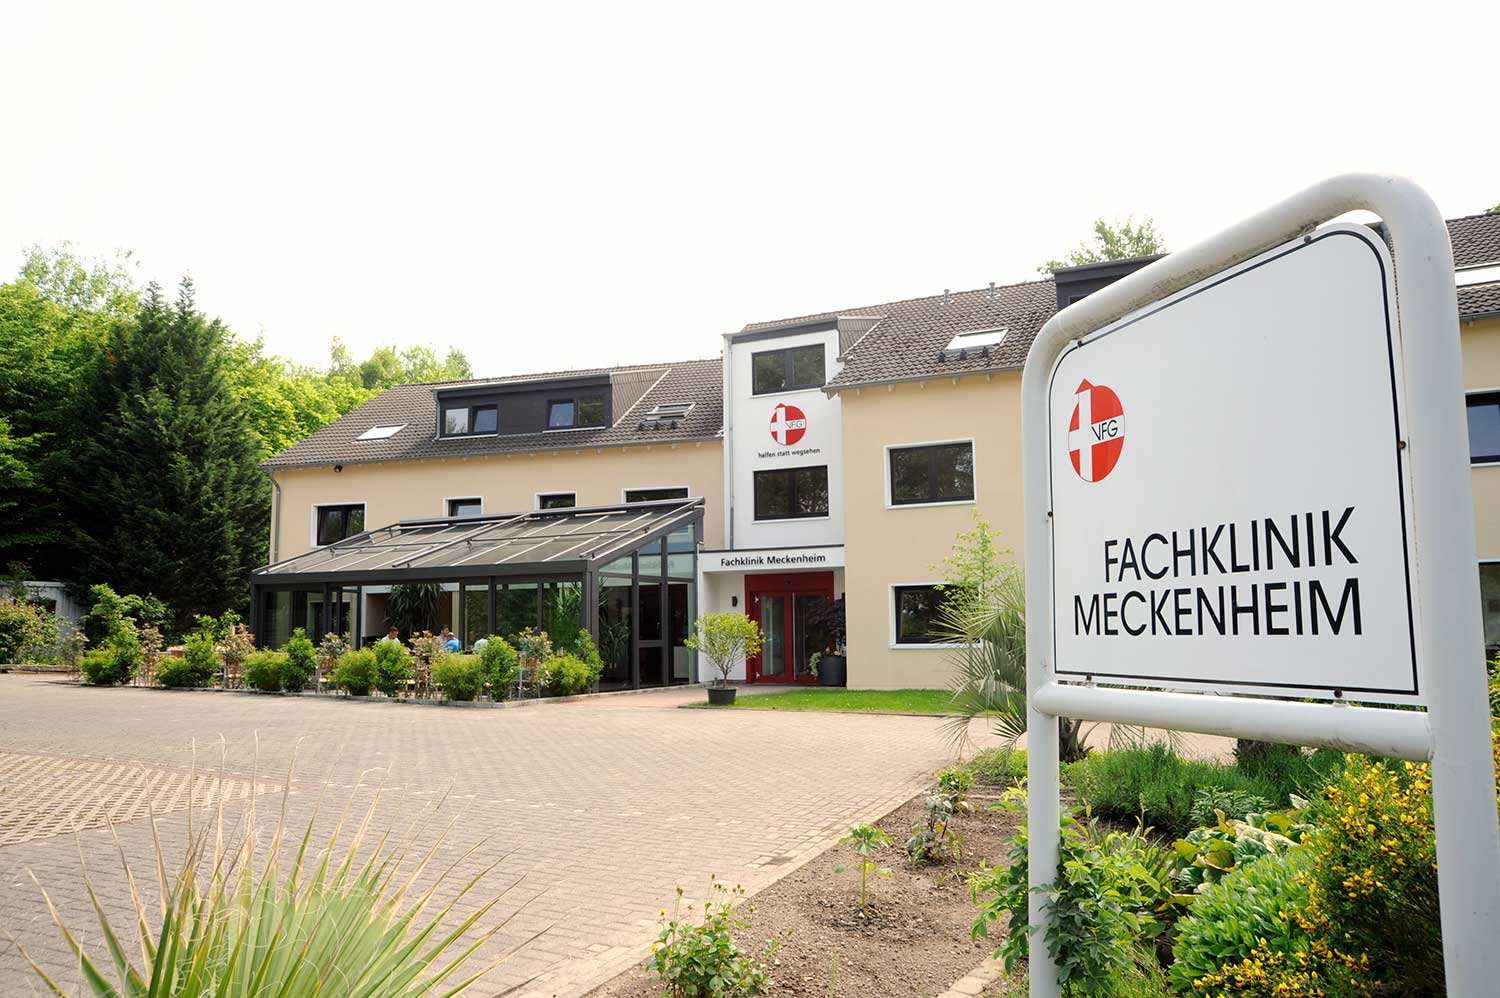 Fachtagung anlässlich der Feier zum 25- jährigen Bestehen der Fachklinik Meckenheim am 18. September 2018